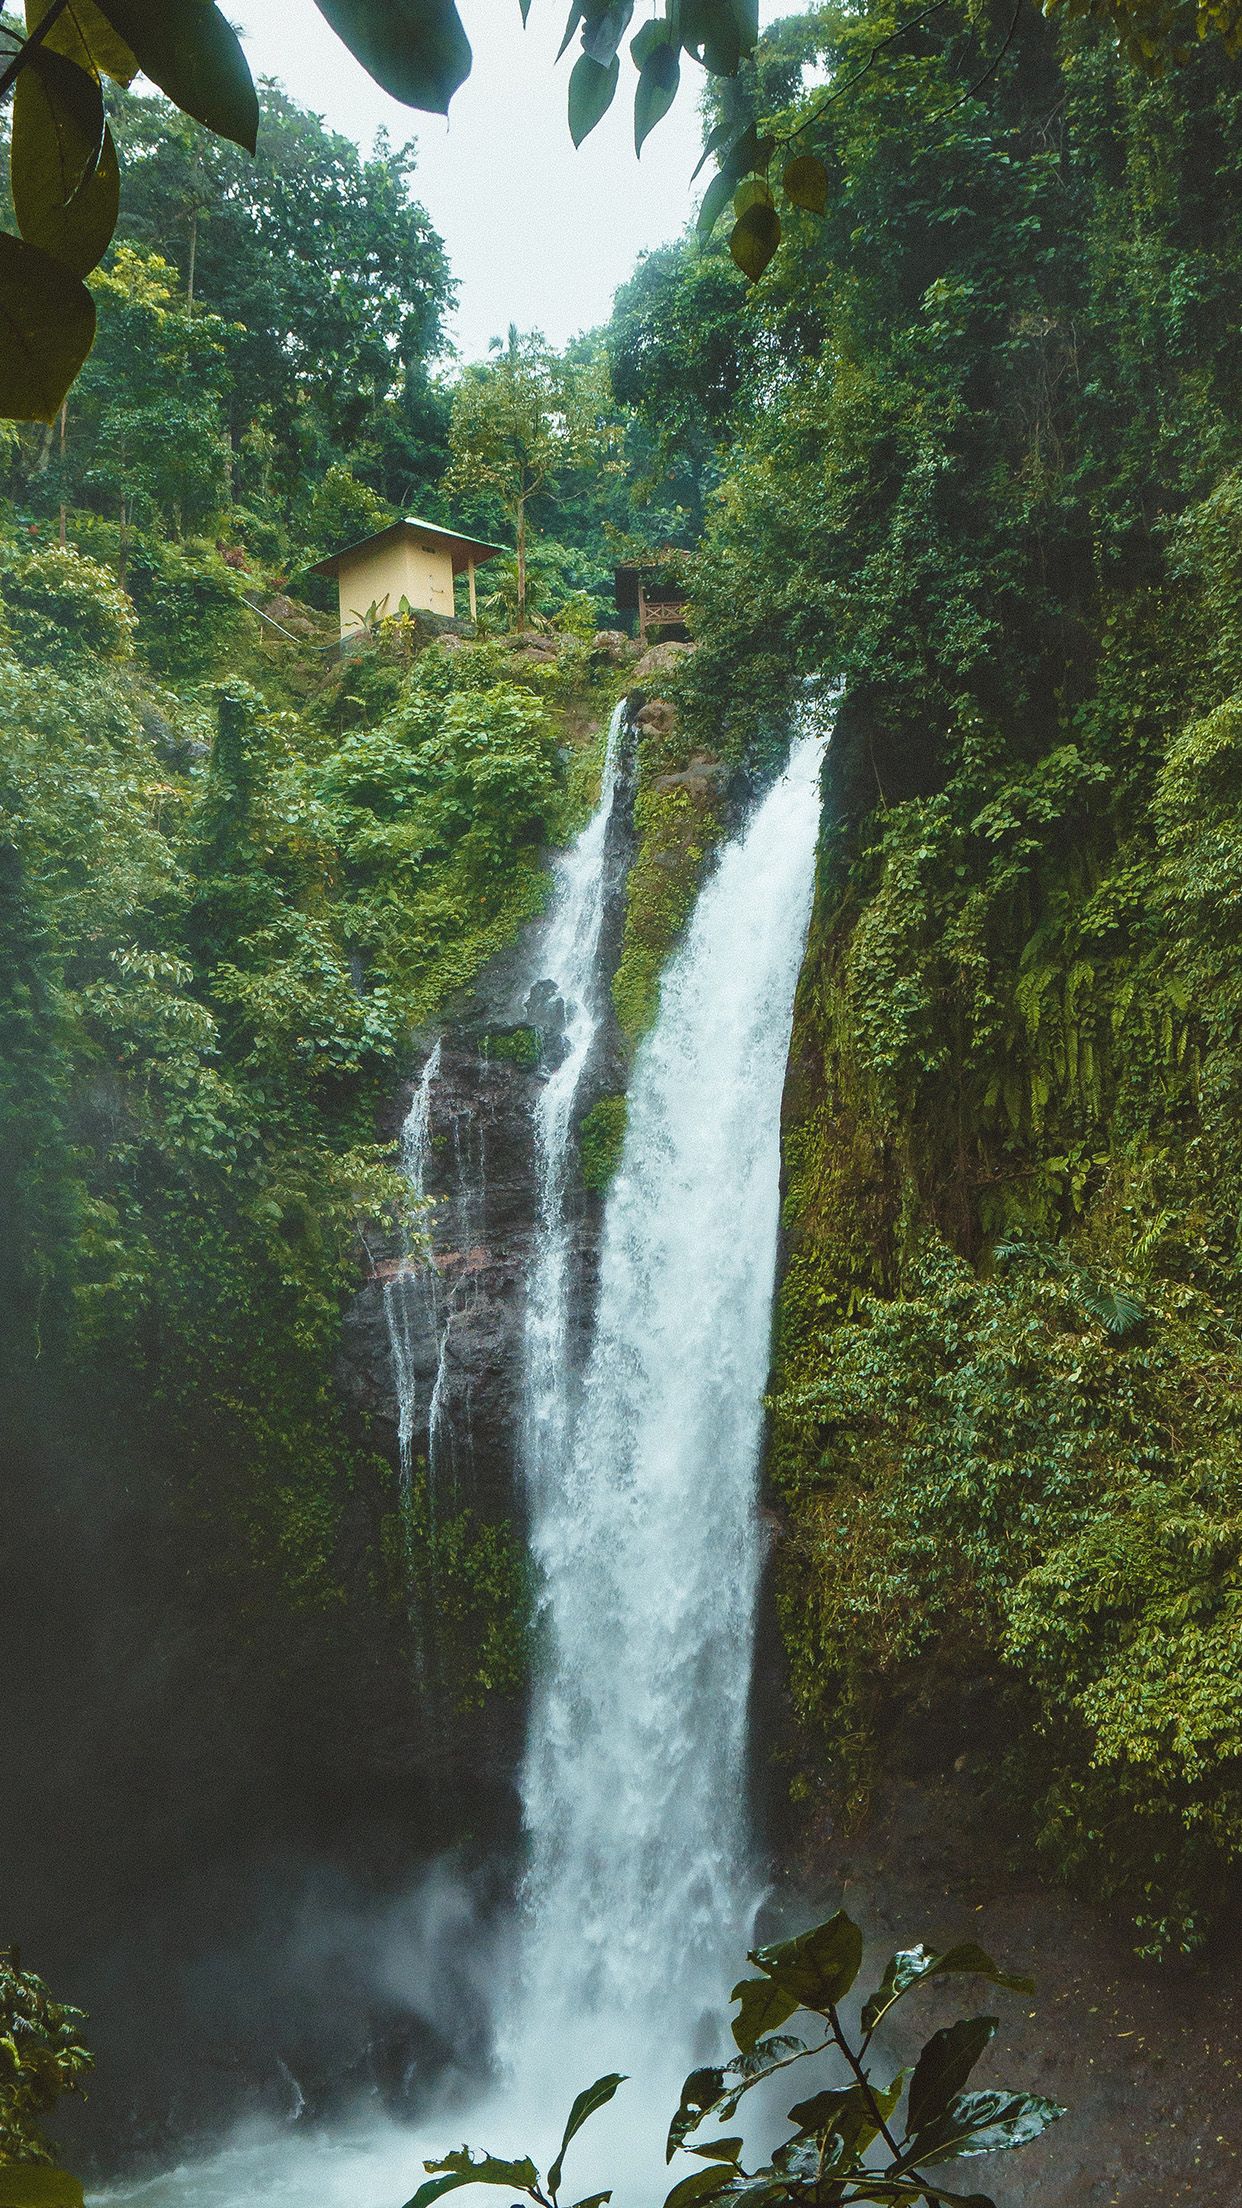 عکس پروفایل خاص تلگرام با طرح رودخانه رویایی در جنگل